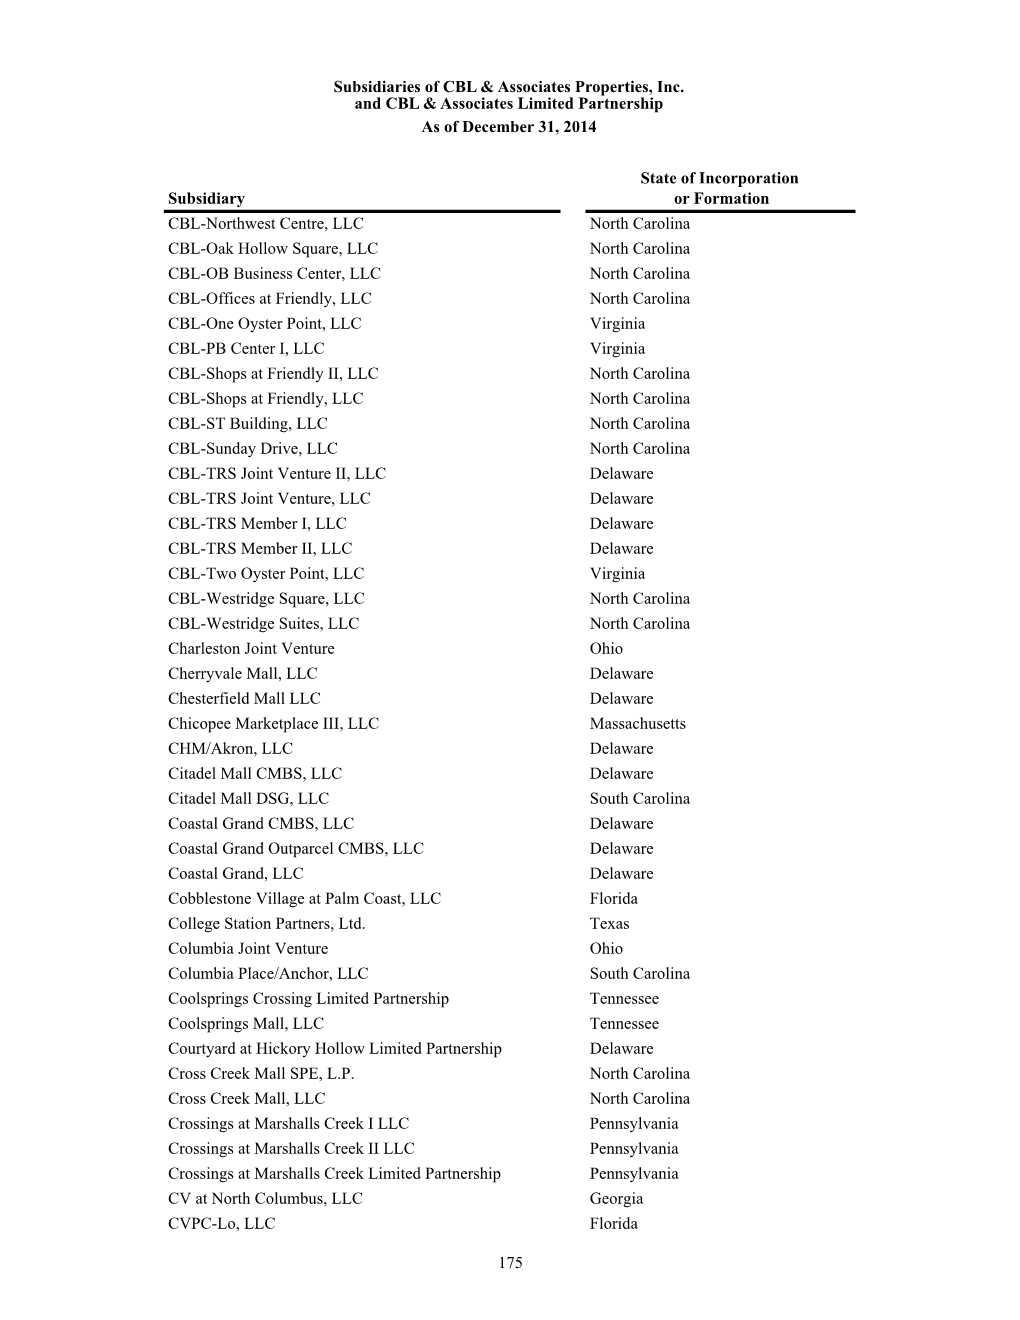 175 Subsidiaries of CBL & Associates Properties, Inc. and CBL